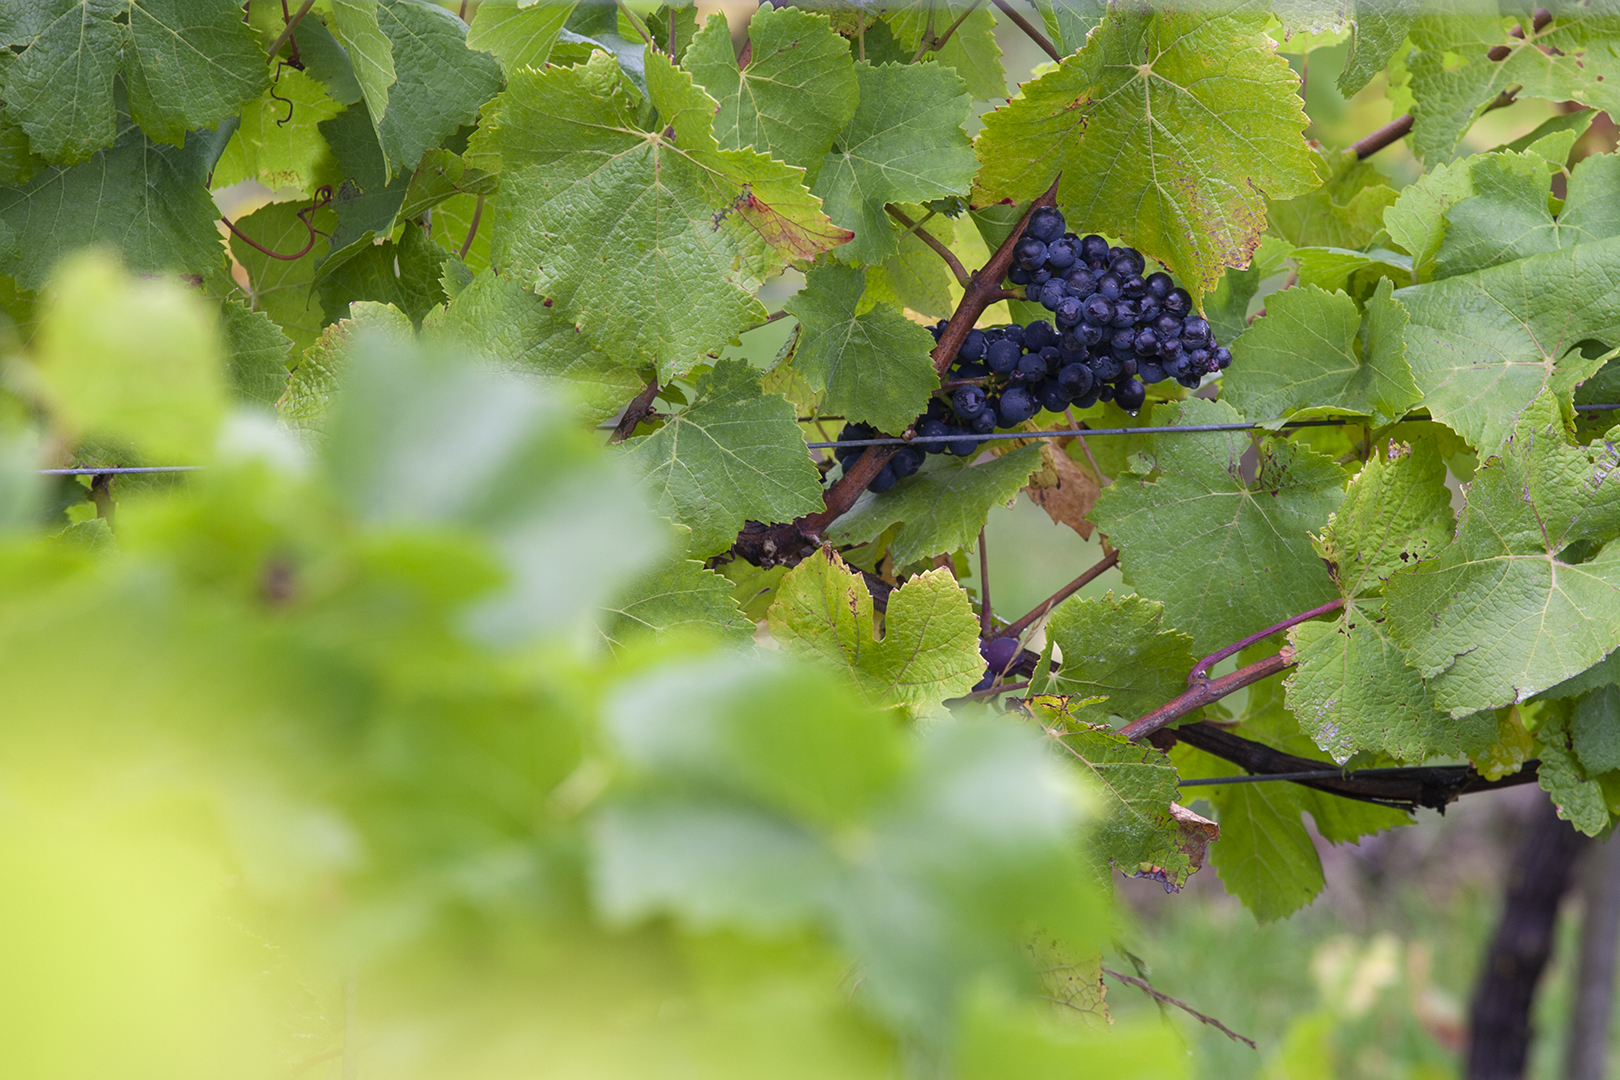 Oxney Organic English wine harvest